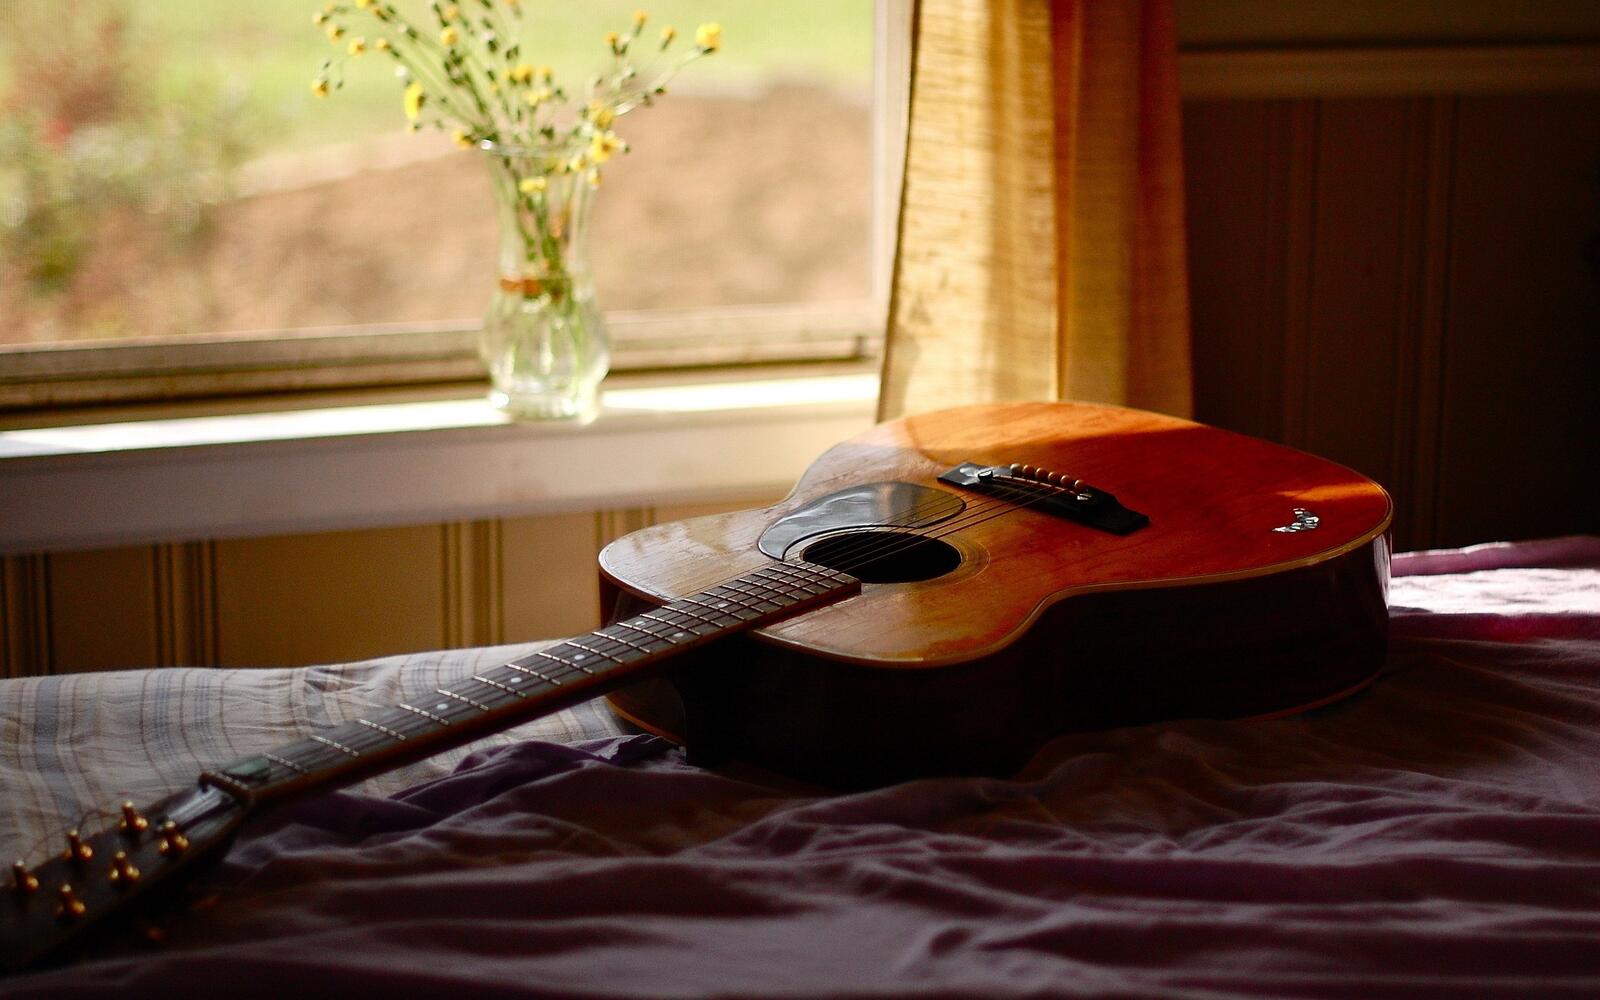 桌面上的壁纸吉他壁纸 文书 床铺